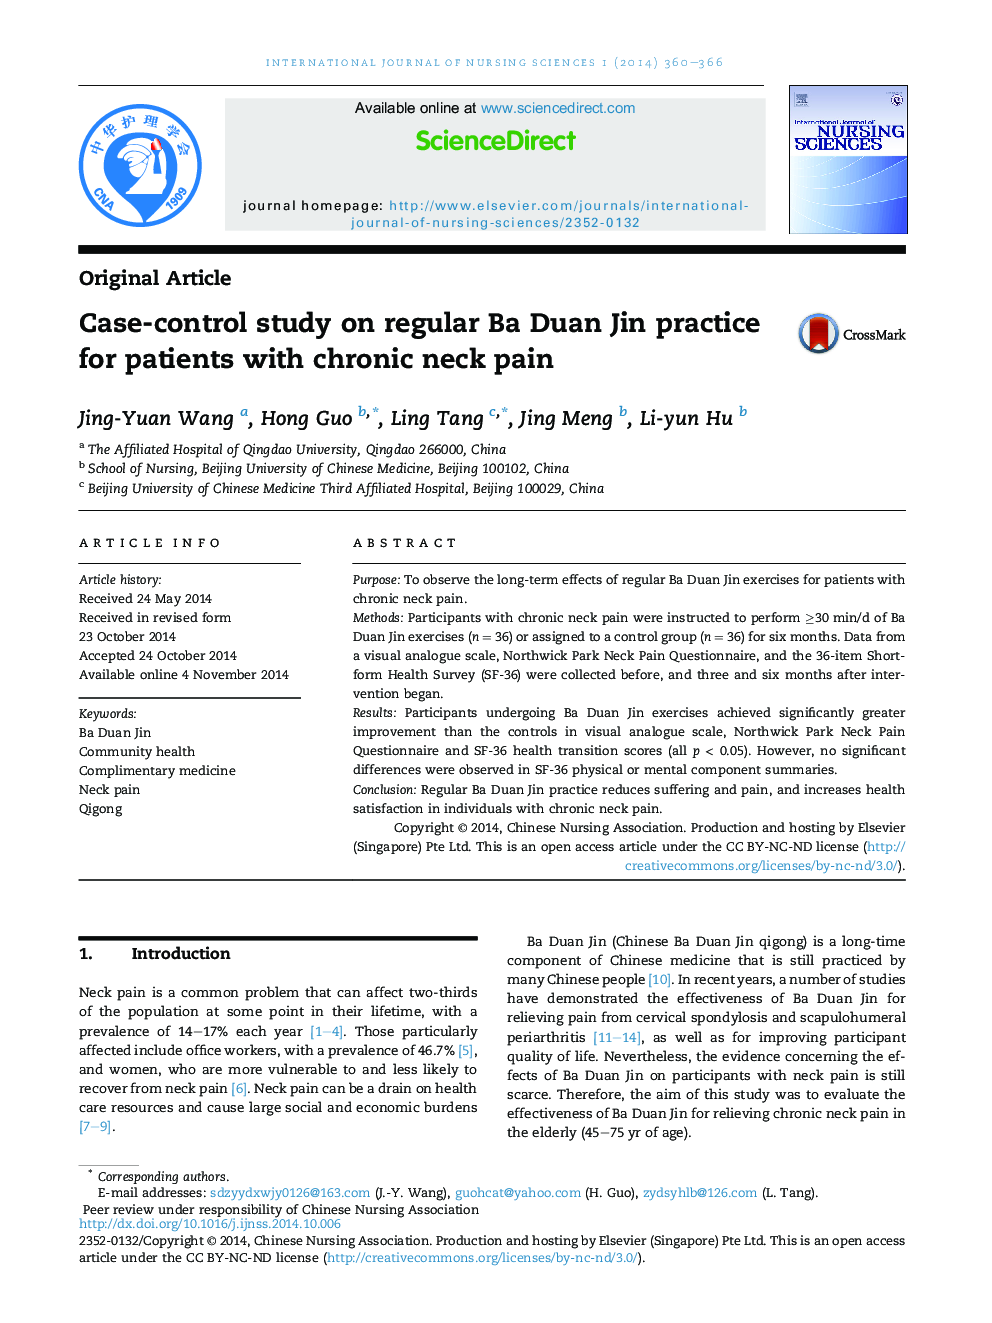 مطالعه موردی بر روی تمرین منظم Ba Duan Jin برای بیماران مبتلا به درد مزمن گردن